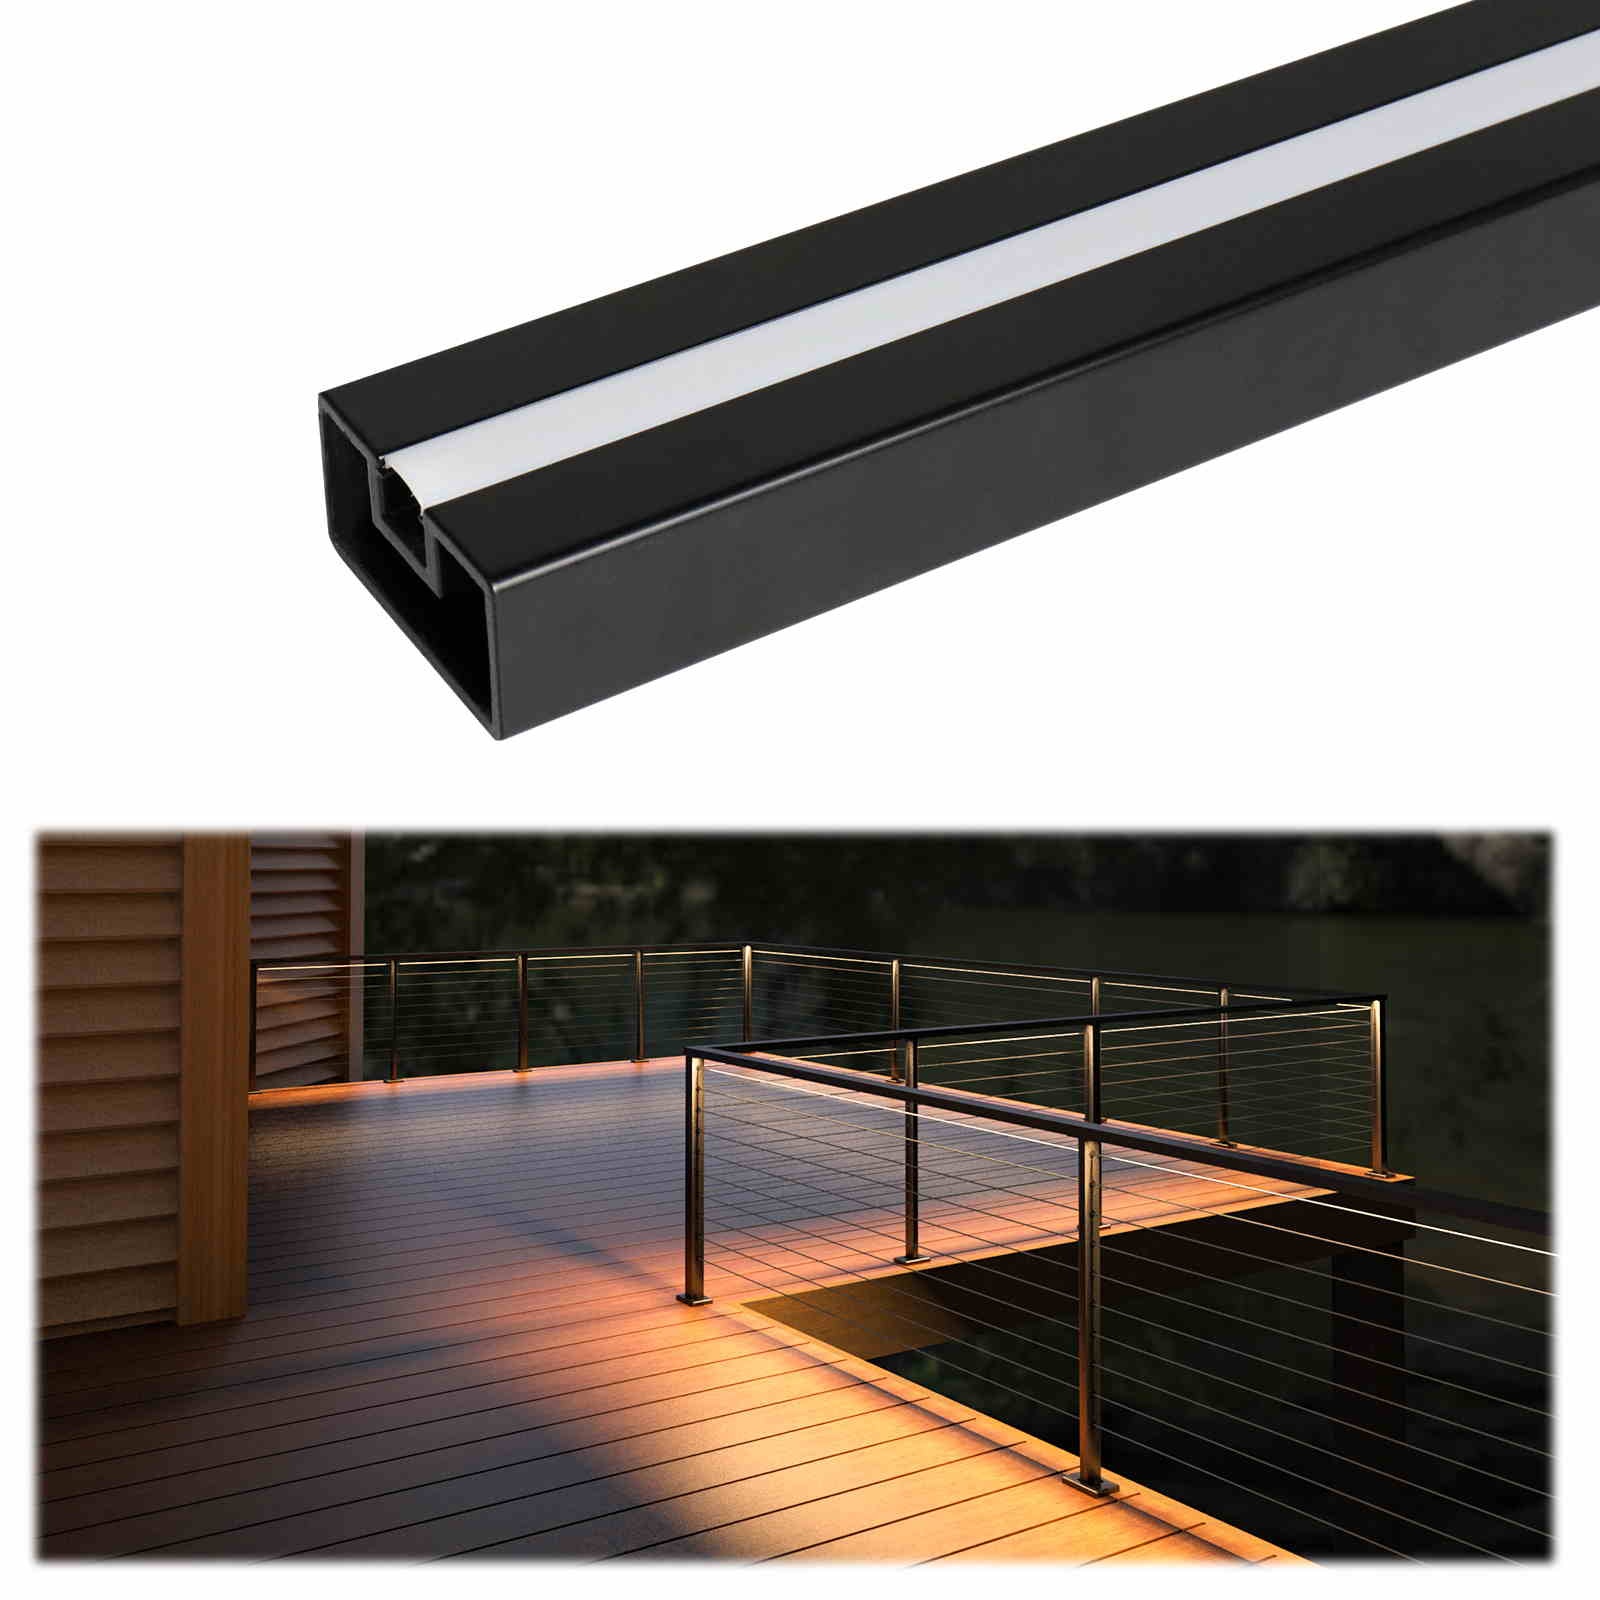 Muzata 6'6" LED Lights Black Handrail HL11 | Muzata